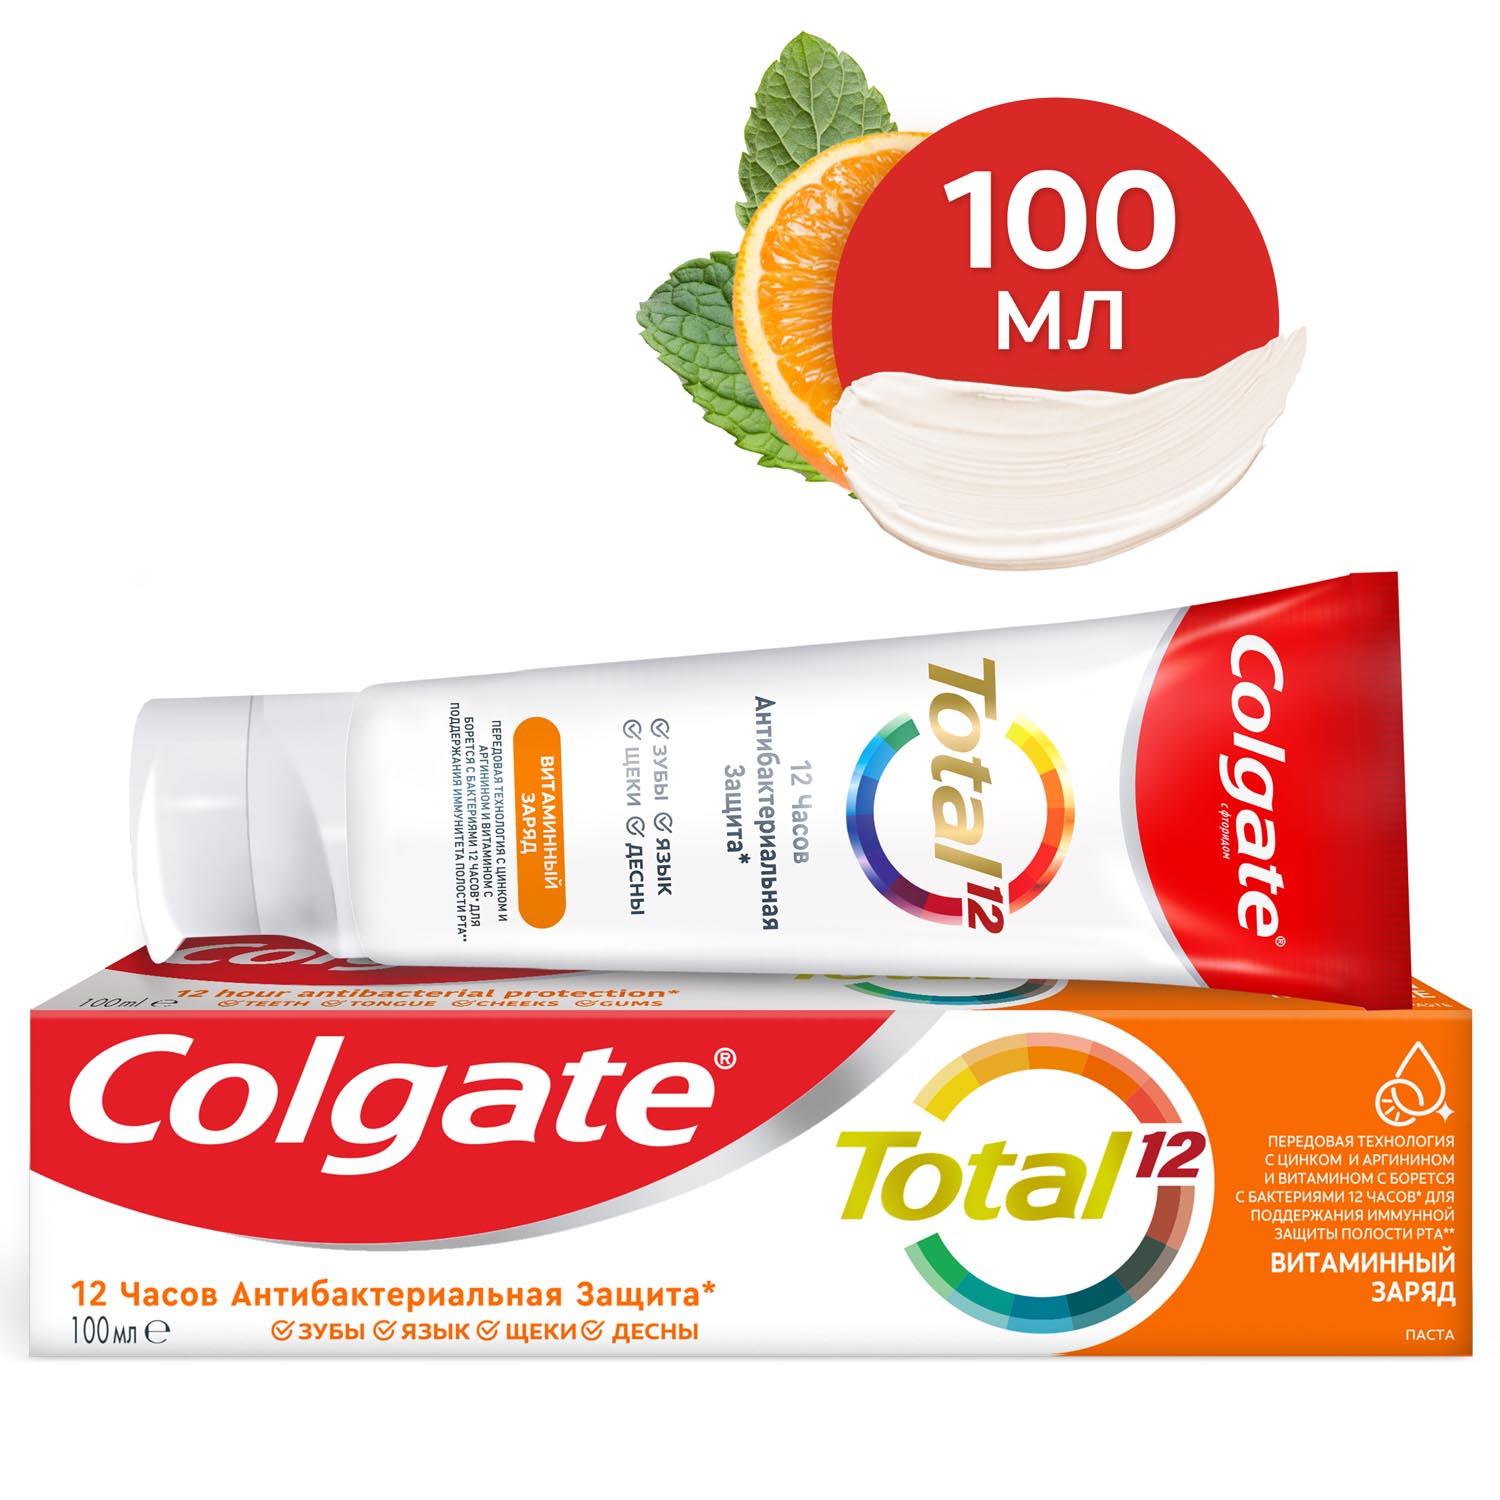 Зубная паста Colgate Total 12 Витаминный заряд с цинком и аргинином для комплексной антибактериальной защиты всей полости рта в течение 12 часов, 100 мл зубная паста colgate лечебные травы с натуральными ингредиентами для здоровья зубов и десен 100 мл